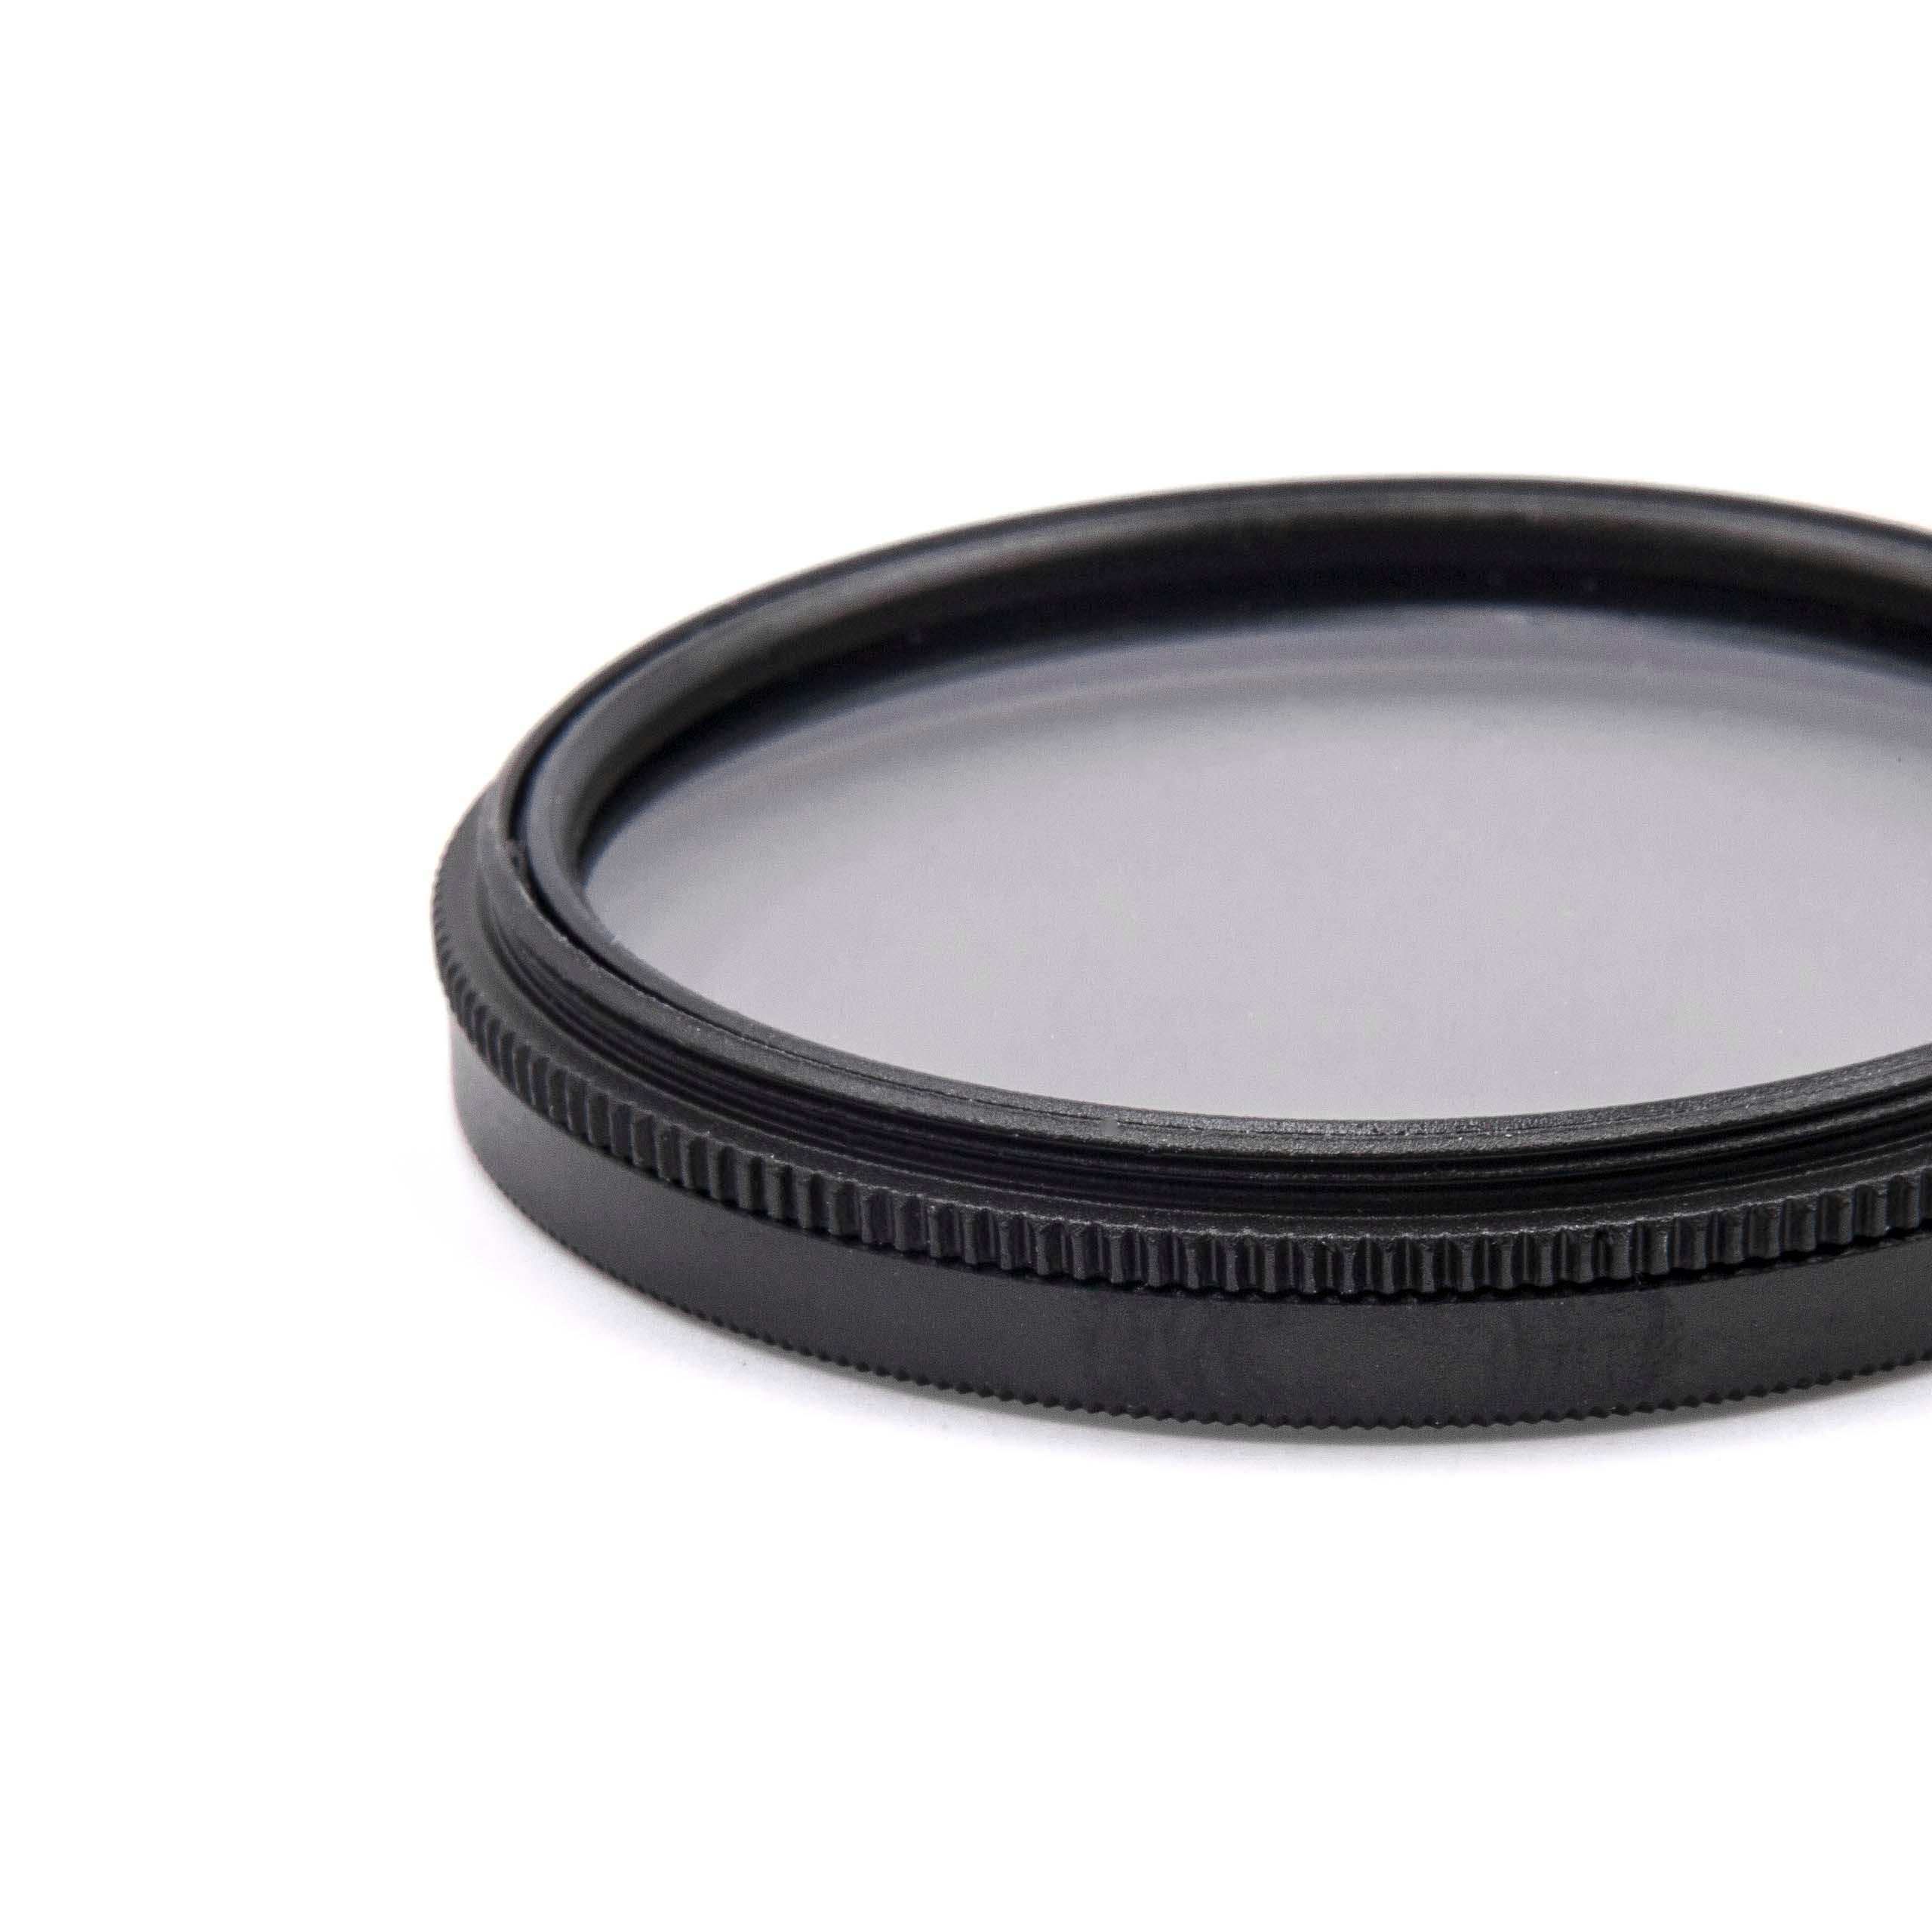 Filtro polarizador para objetivos y cámaras con rosca de filtro de 49 mm - Filtro CPL